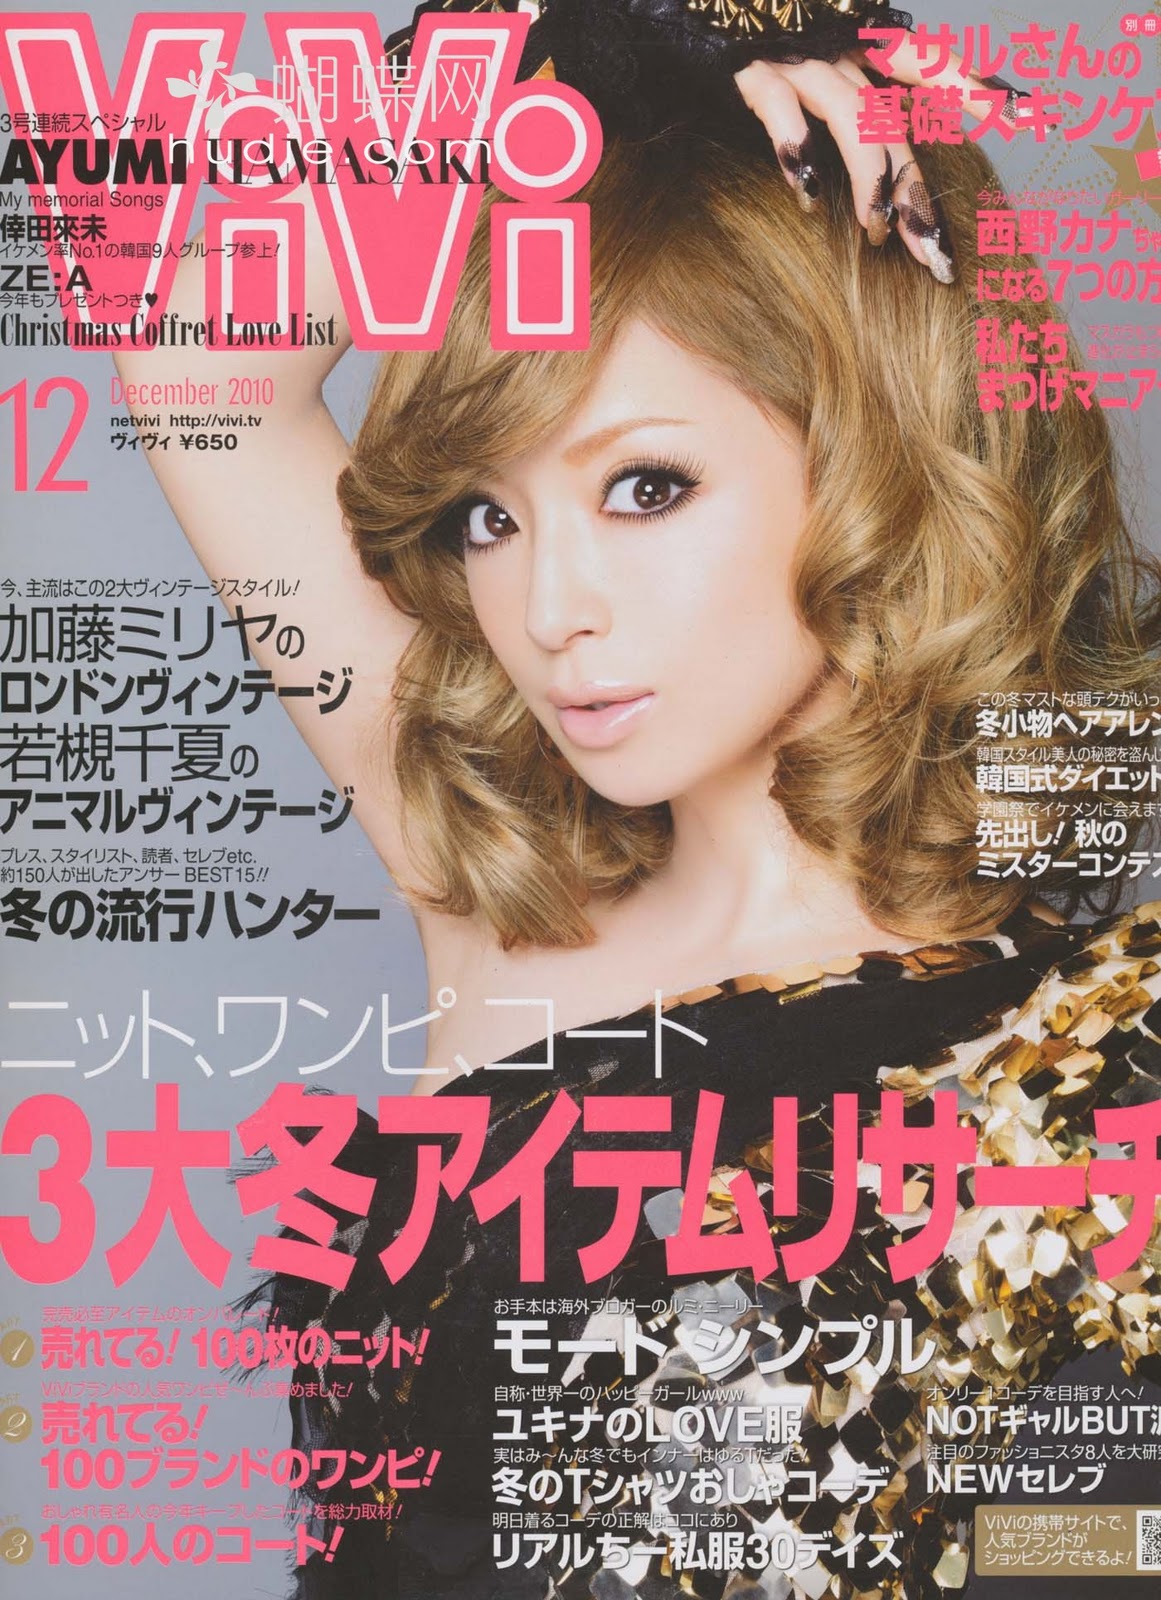 Best Movie 2011 Japanese Popular Women S Magazines Viva 2010 12 December